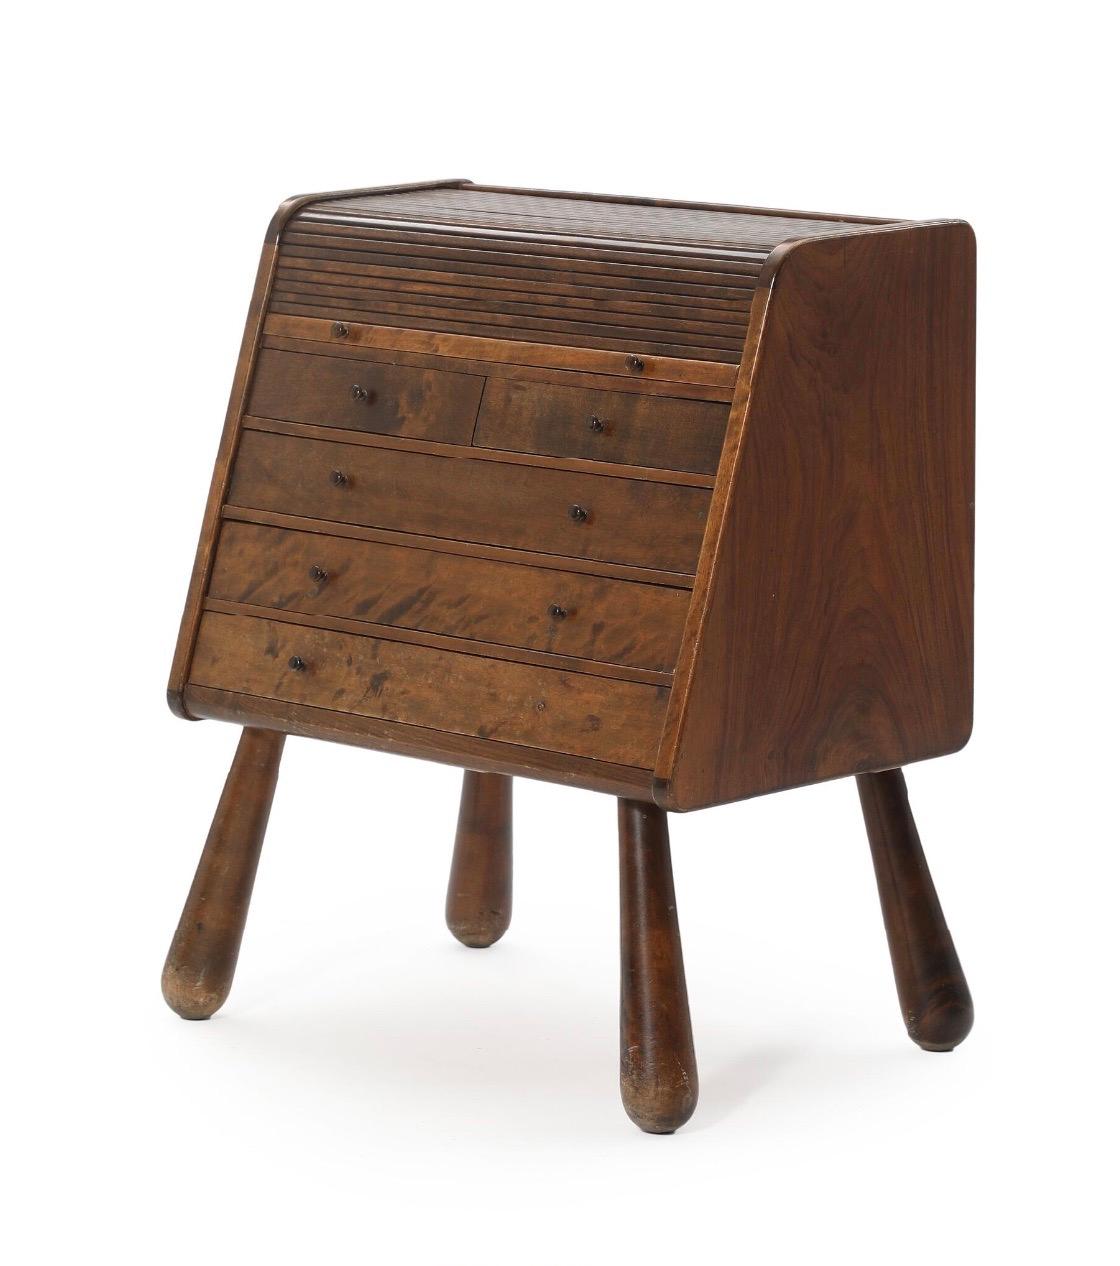 Geflammte Birke war in den 1930er Jahren ein beliebtes Holz für Art-Déco-Möbel, und diese Kommode weist mehrere typische Art-Déco-Design-Elemente auf. Ohne zusätzliche Informationen über den Designer oder Hersteller ist es jedoch schwierig, dieses